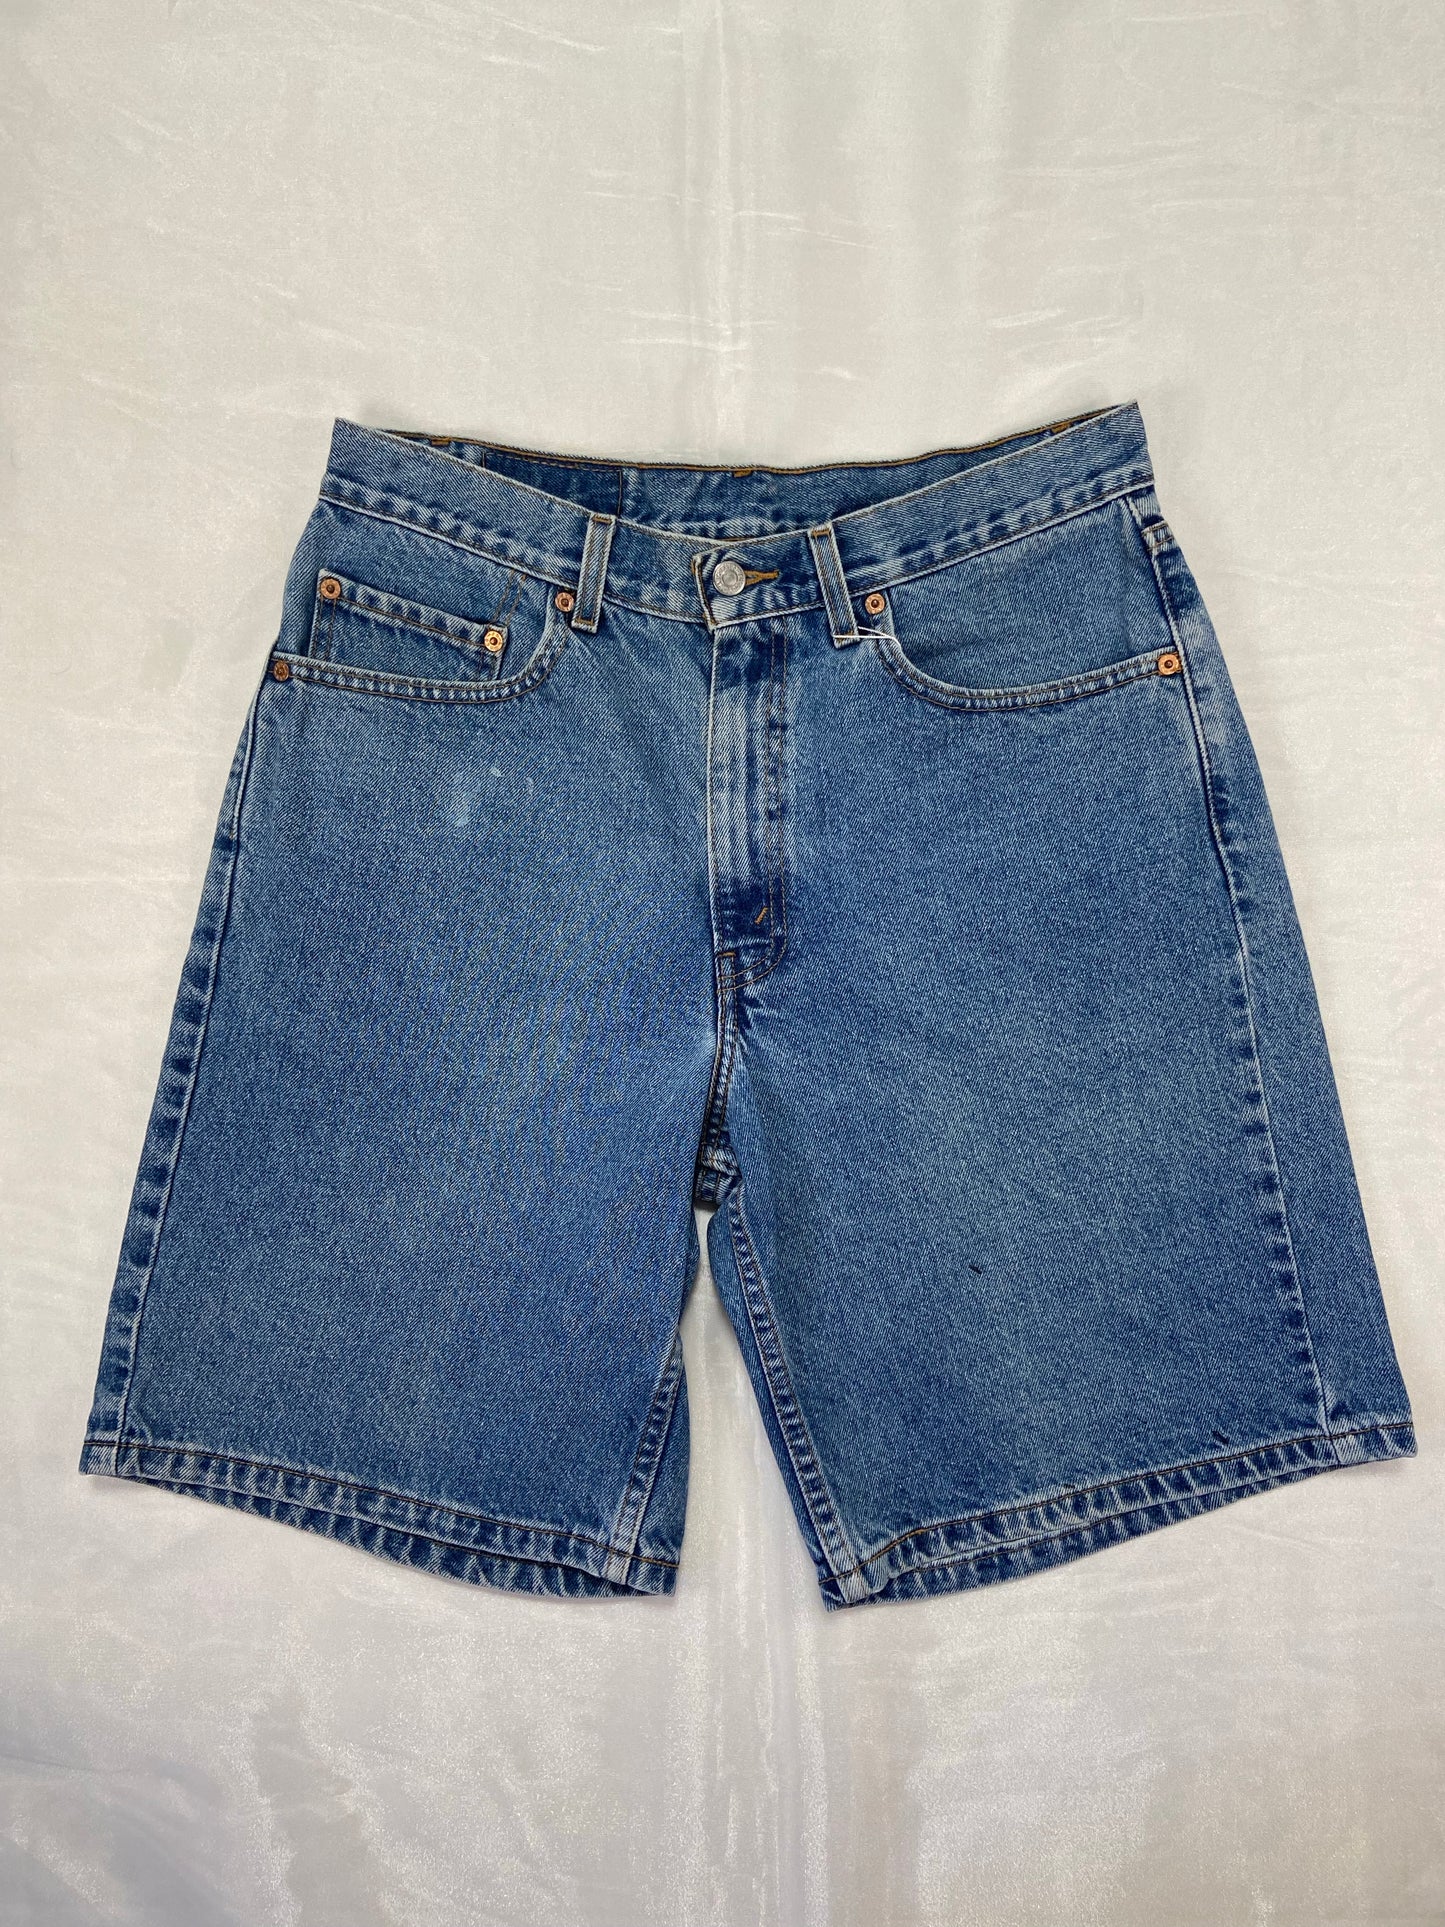 550 Levi’s Medium Wash Denim Shorts - 32”